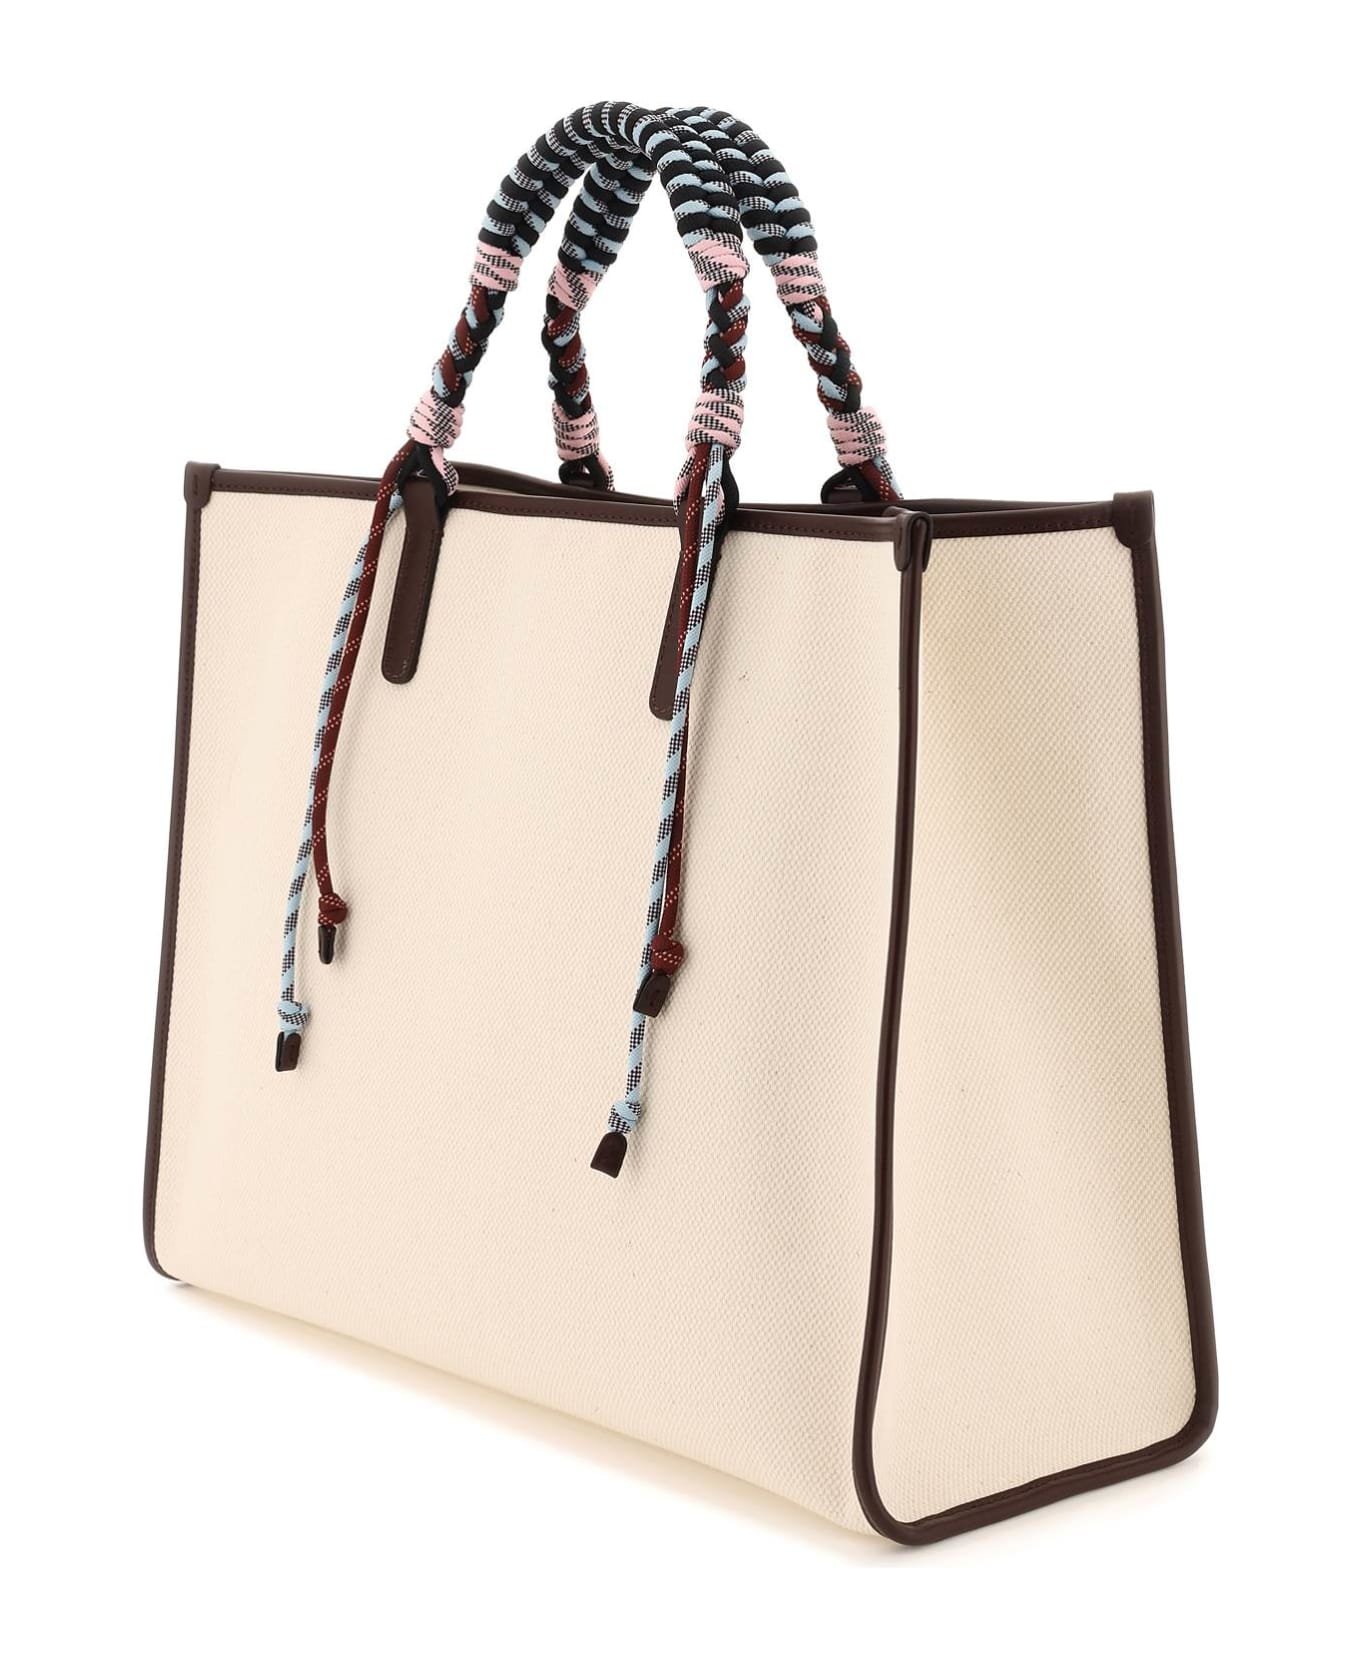 Etro Shopper Bag With Braided Handles - BEIGE (Beige) トートバッグ